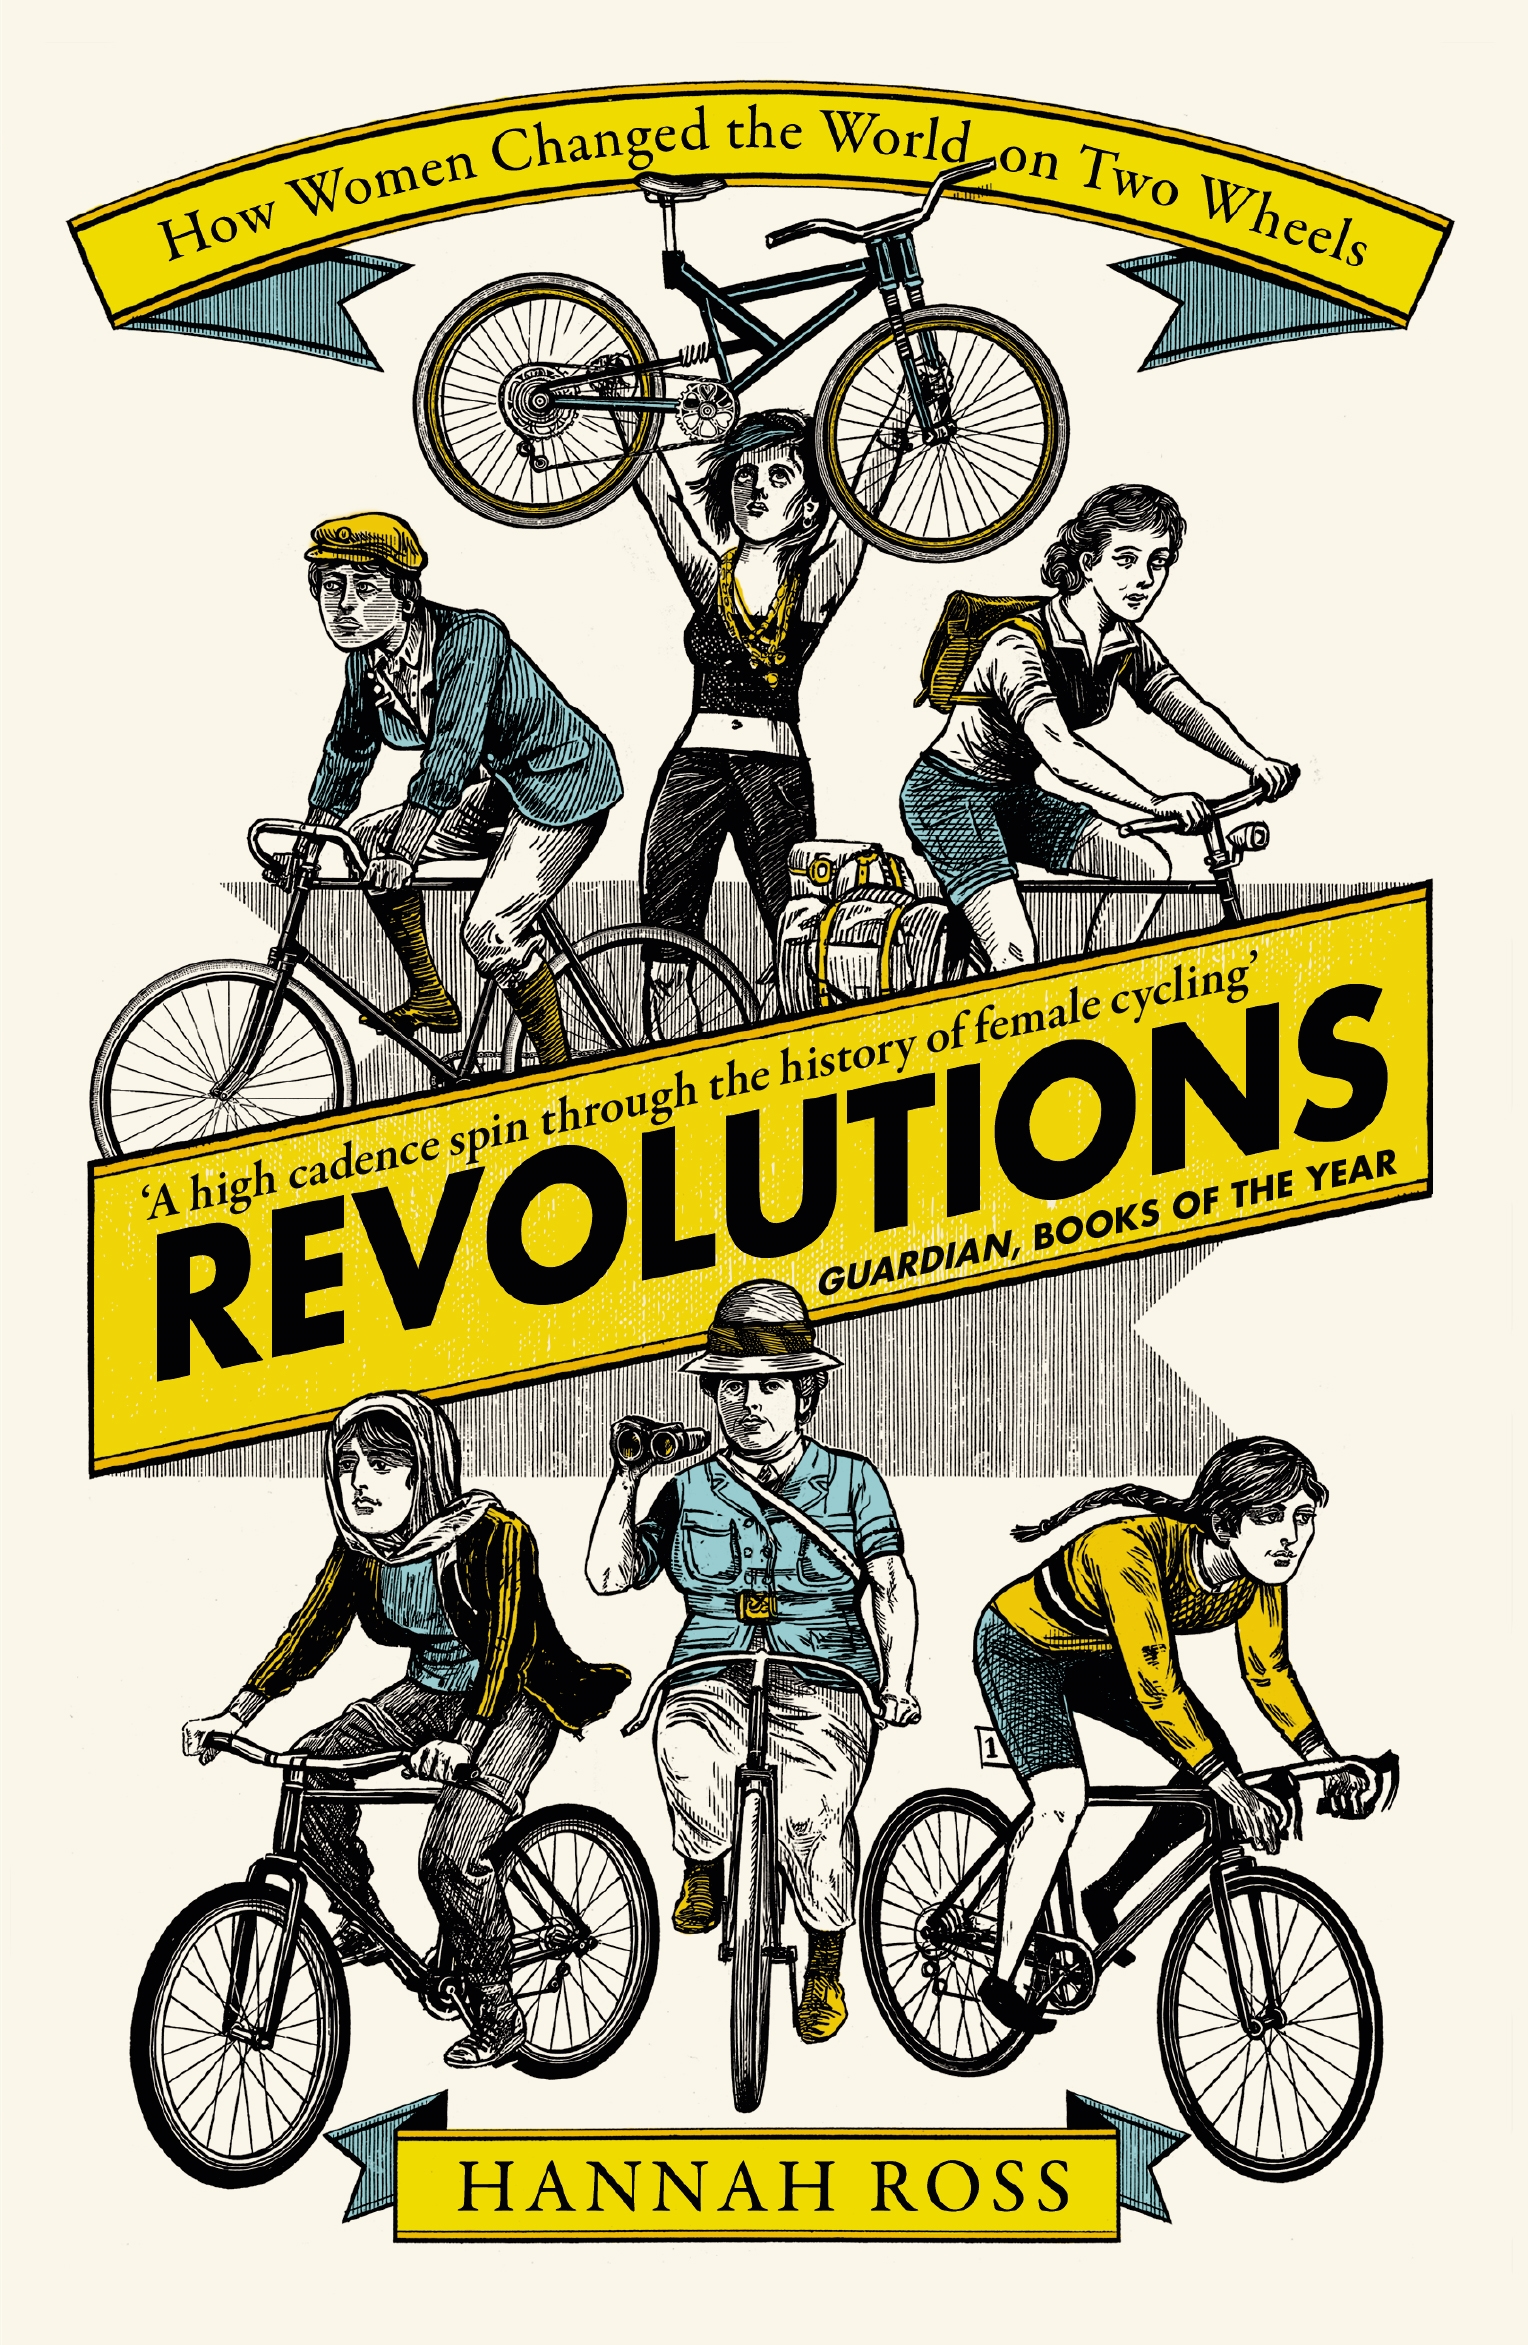 Revolutions by Hannah Ross